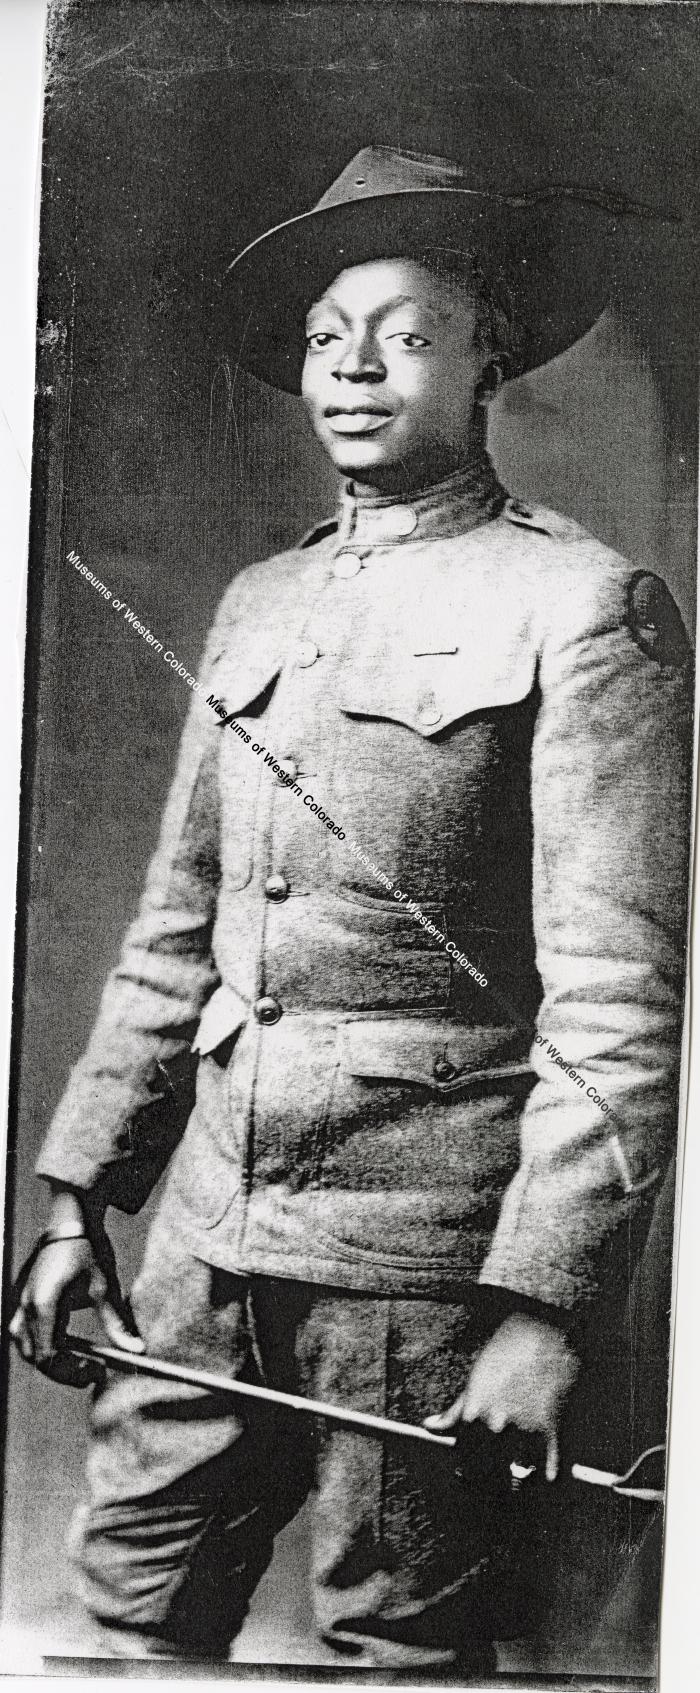 Marcus Hines in WWI uniform